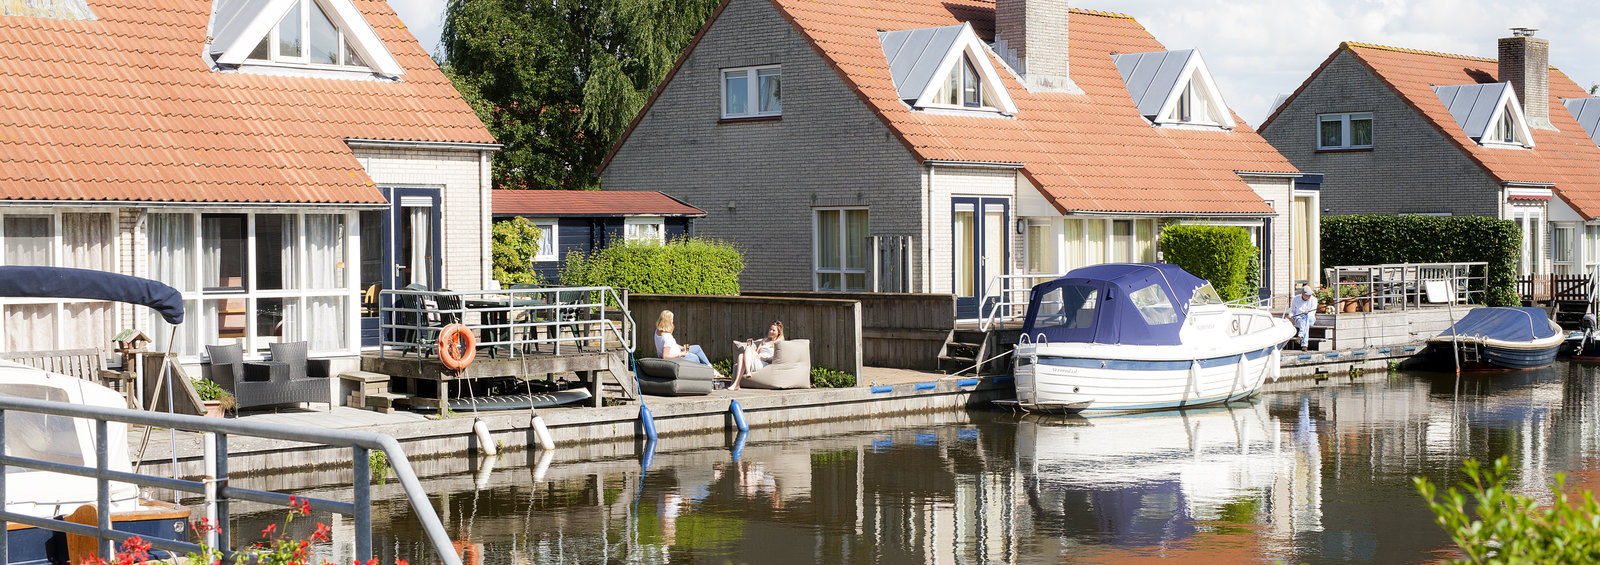 Ferienhaus mit boot mieten in Holland